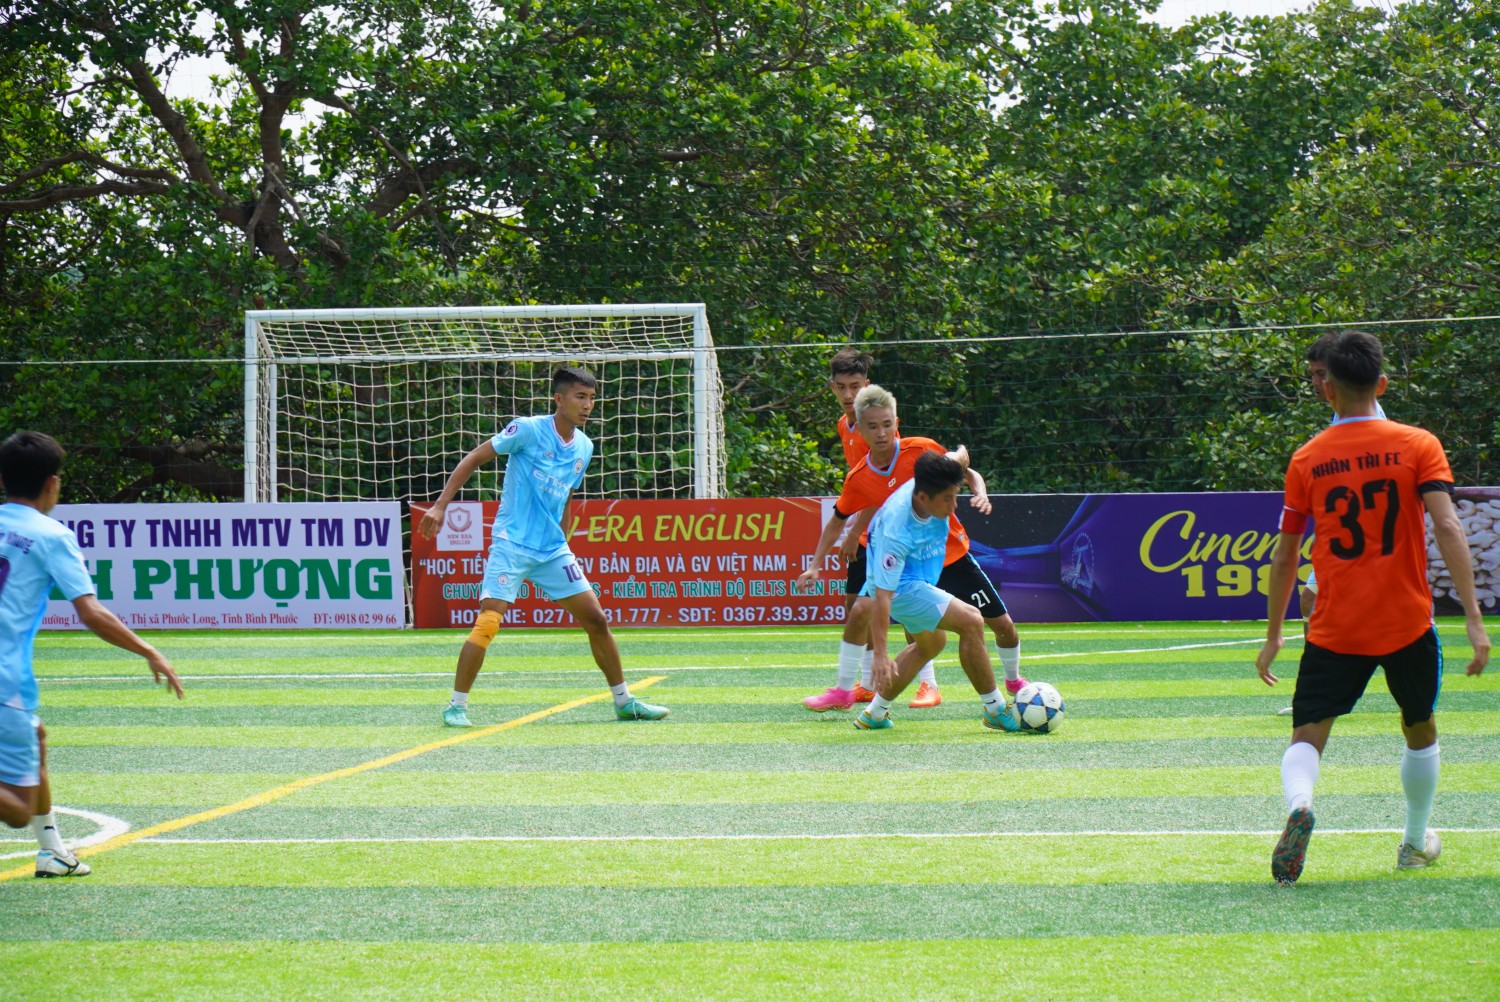 8 đội bóng tham gia giải bóng đá S7 Bình Phước mở rộng